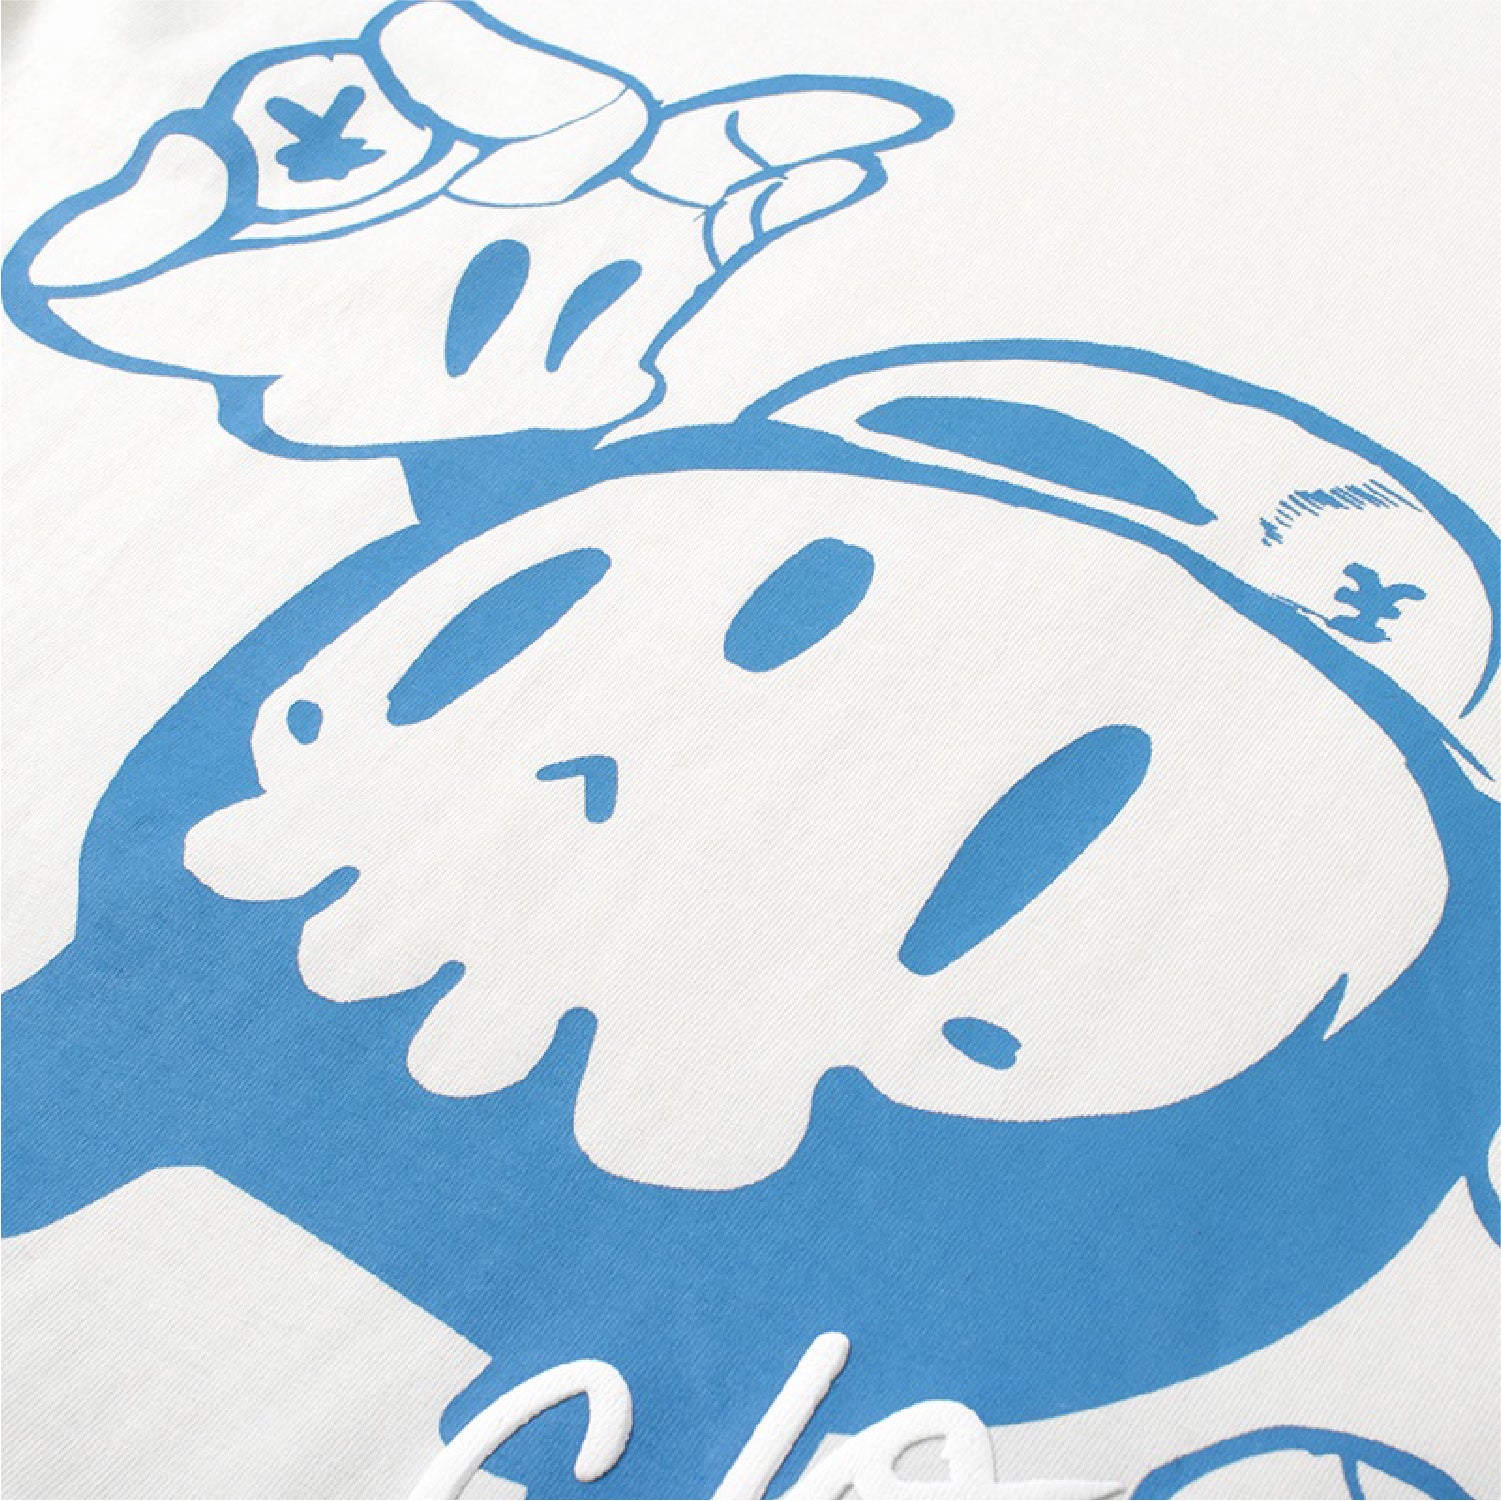 ディコベイビーディコTシャツ / Dico BaBy Dico T-shirt - Cream